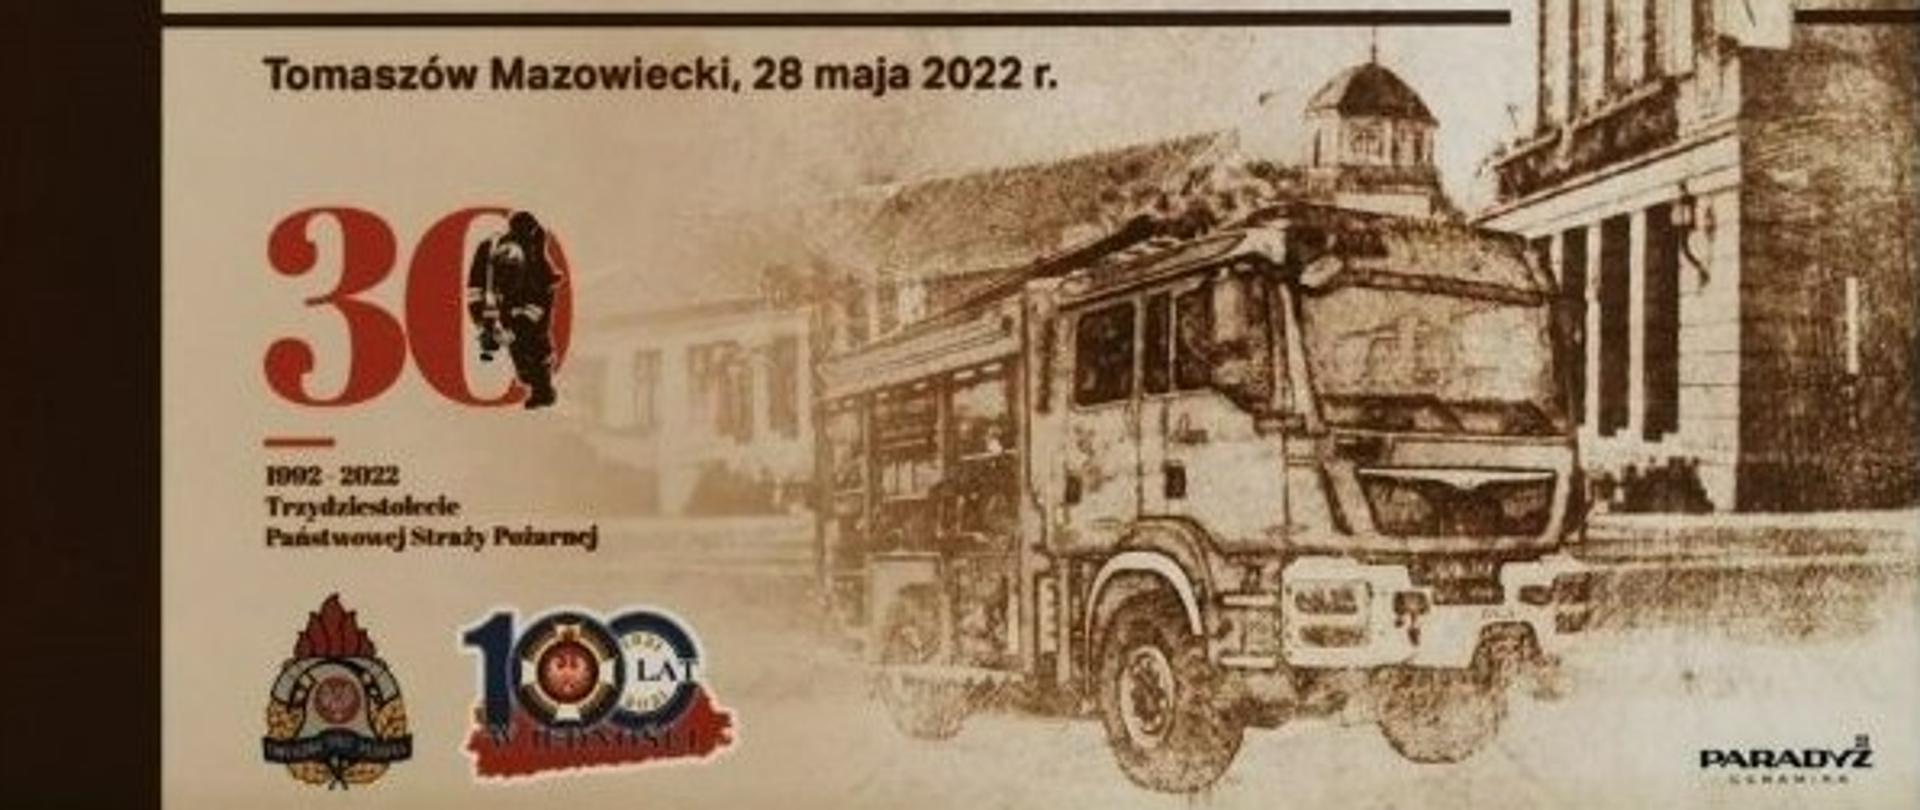 Zdjęcie przedstawia pamiątkowy obraz z napisem Wojewódzkie Obchody Dnia Strażaka 2022 Tomaszów Mazowiecki, 28 maja 2022 r. Pod napisem widoczne logo trzydziestolecia PSP oraz logo PSP. Z prawej strony grafika pojazdu gaśniczego na tle budynku. 